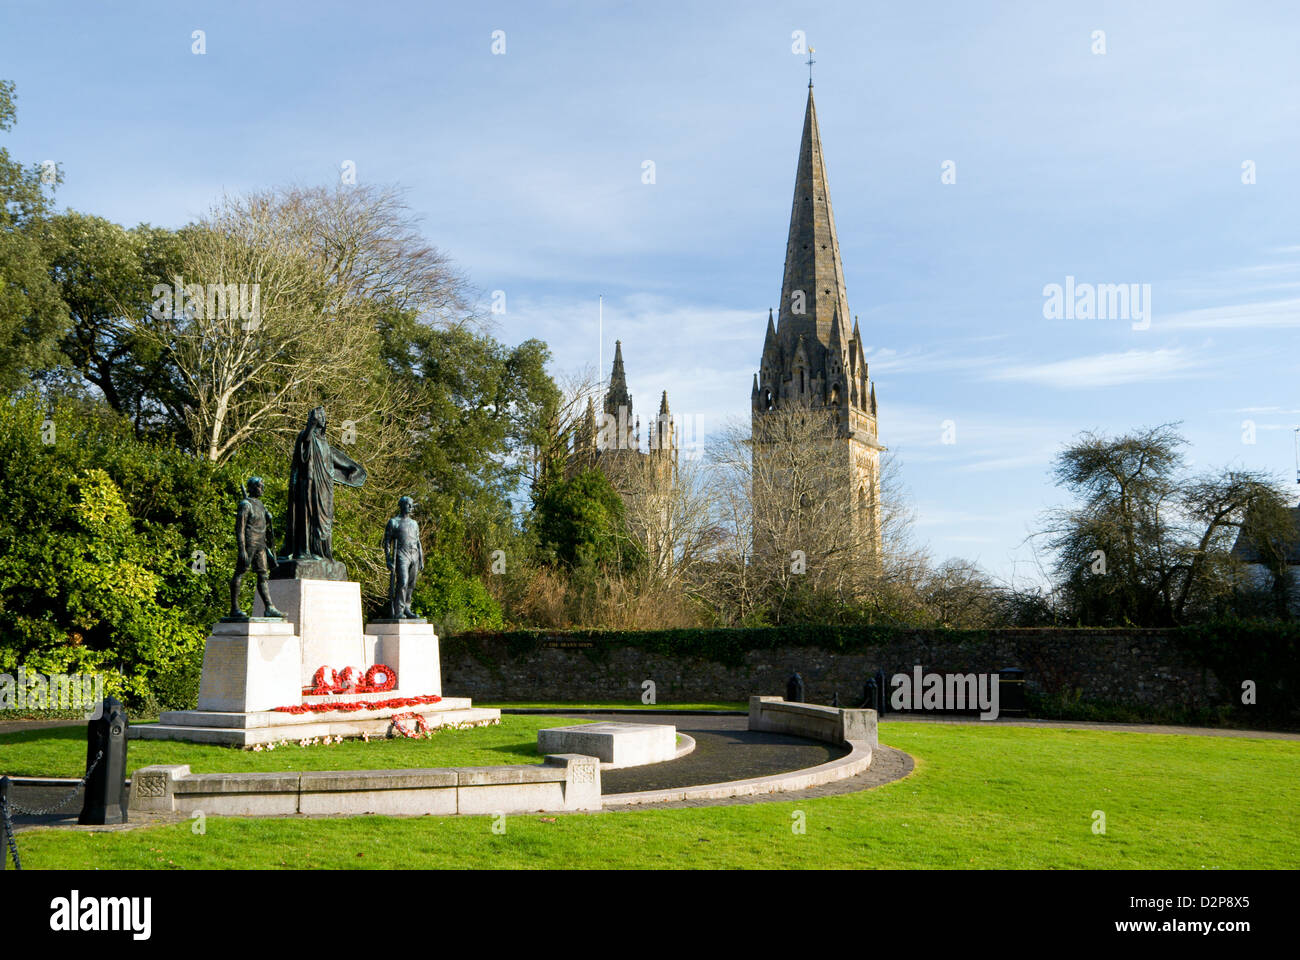 Monument commémoratif de guerre, par William Goscombe John 1924 Llandaff, Cardiff, Pays de Galles, Royaume-Uni Banque D'Images